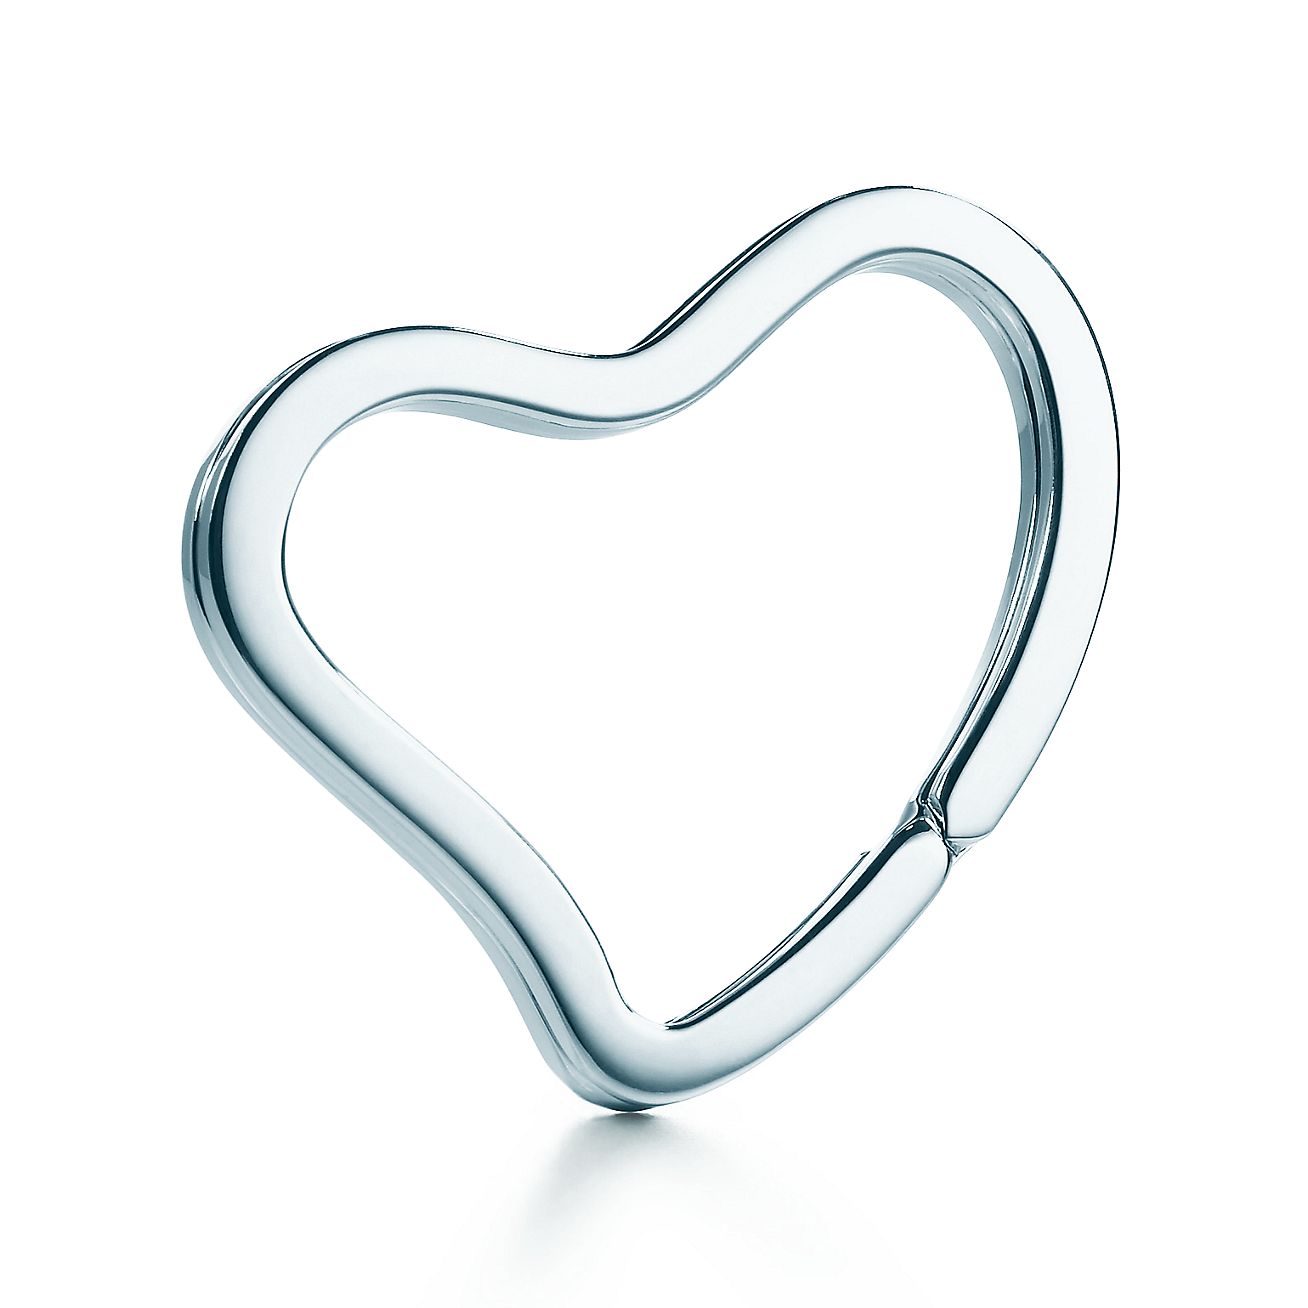 tiffany heart keychain